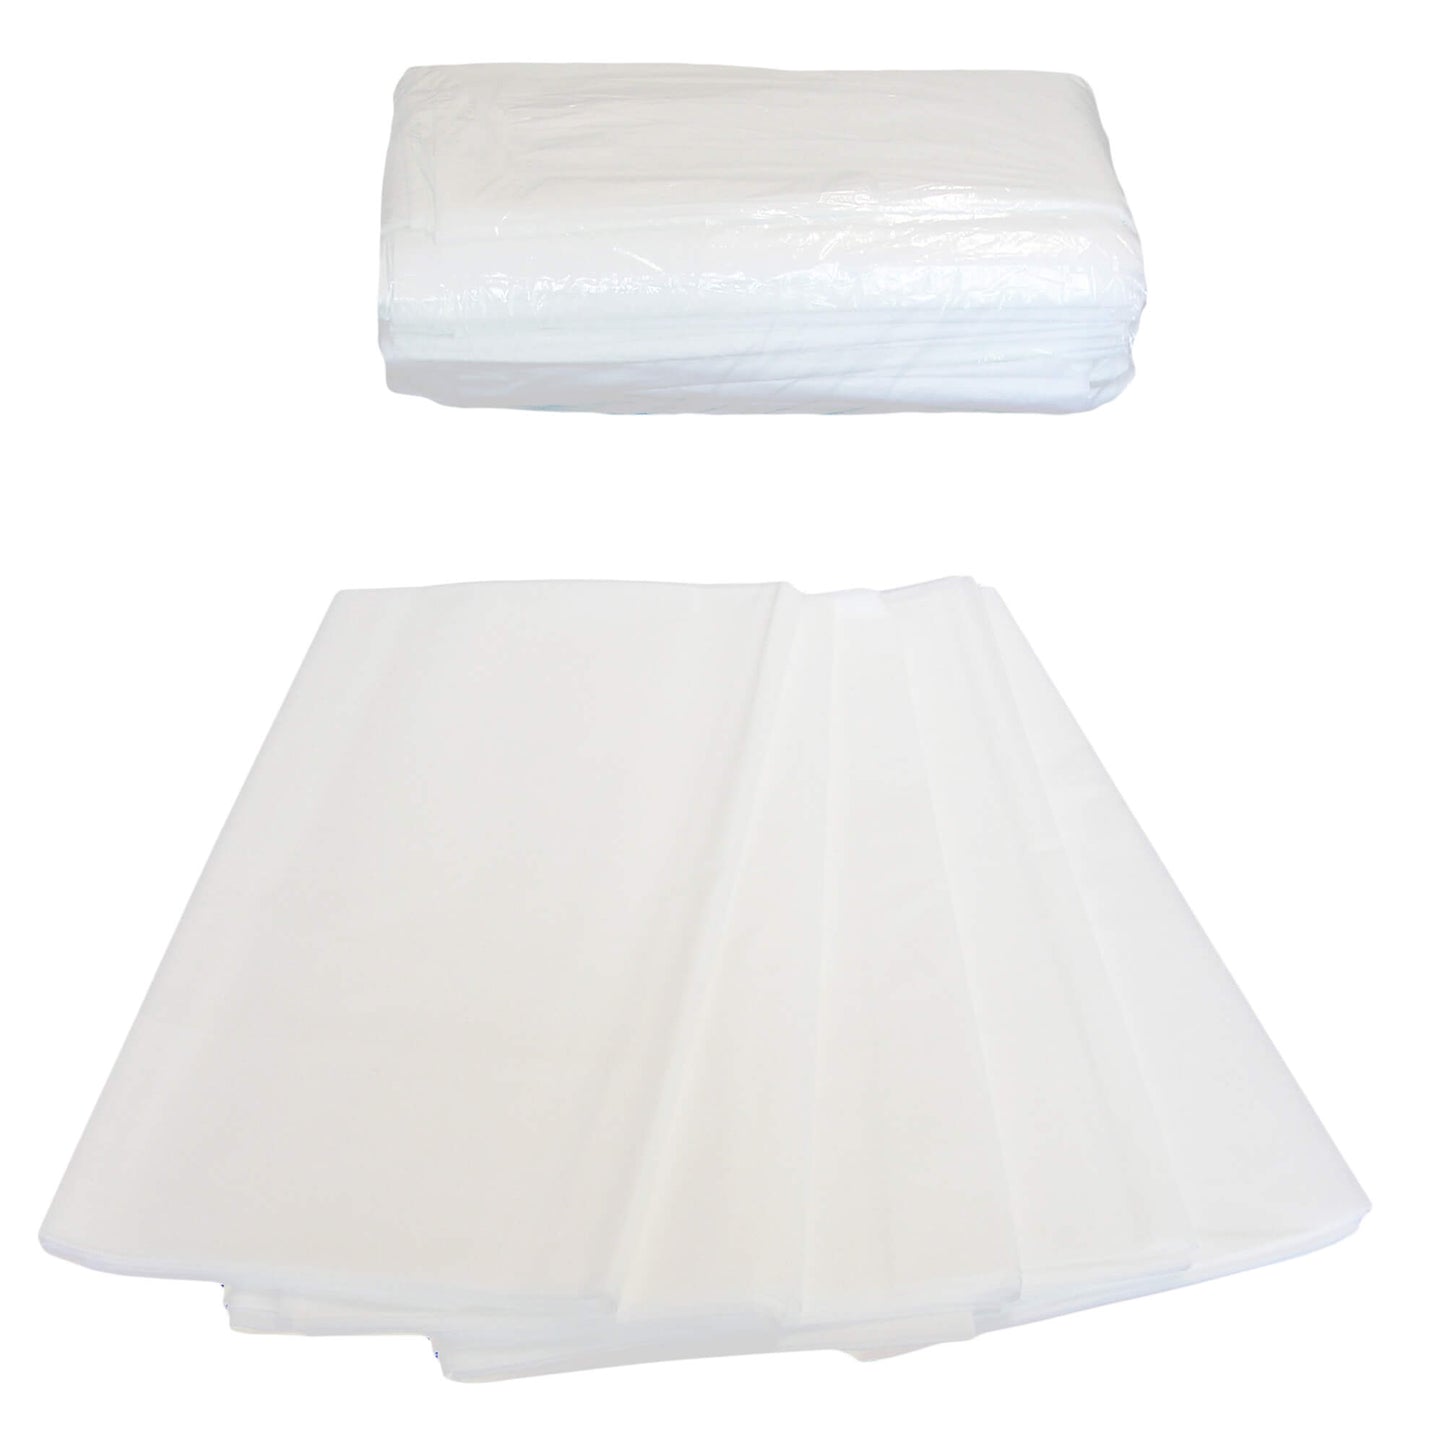 Disposable bed sheets EL4 140x220 cm